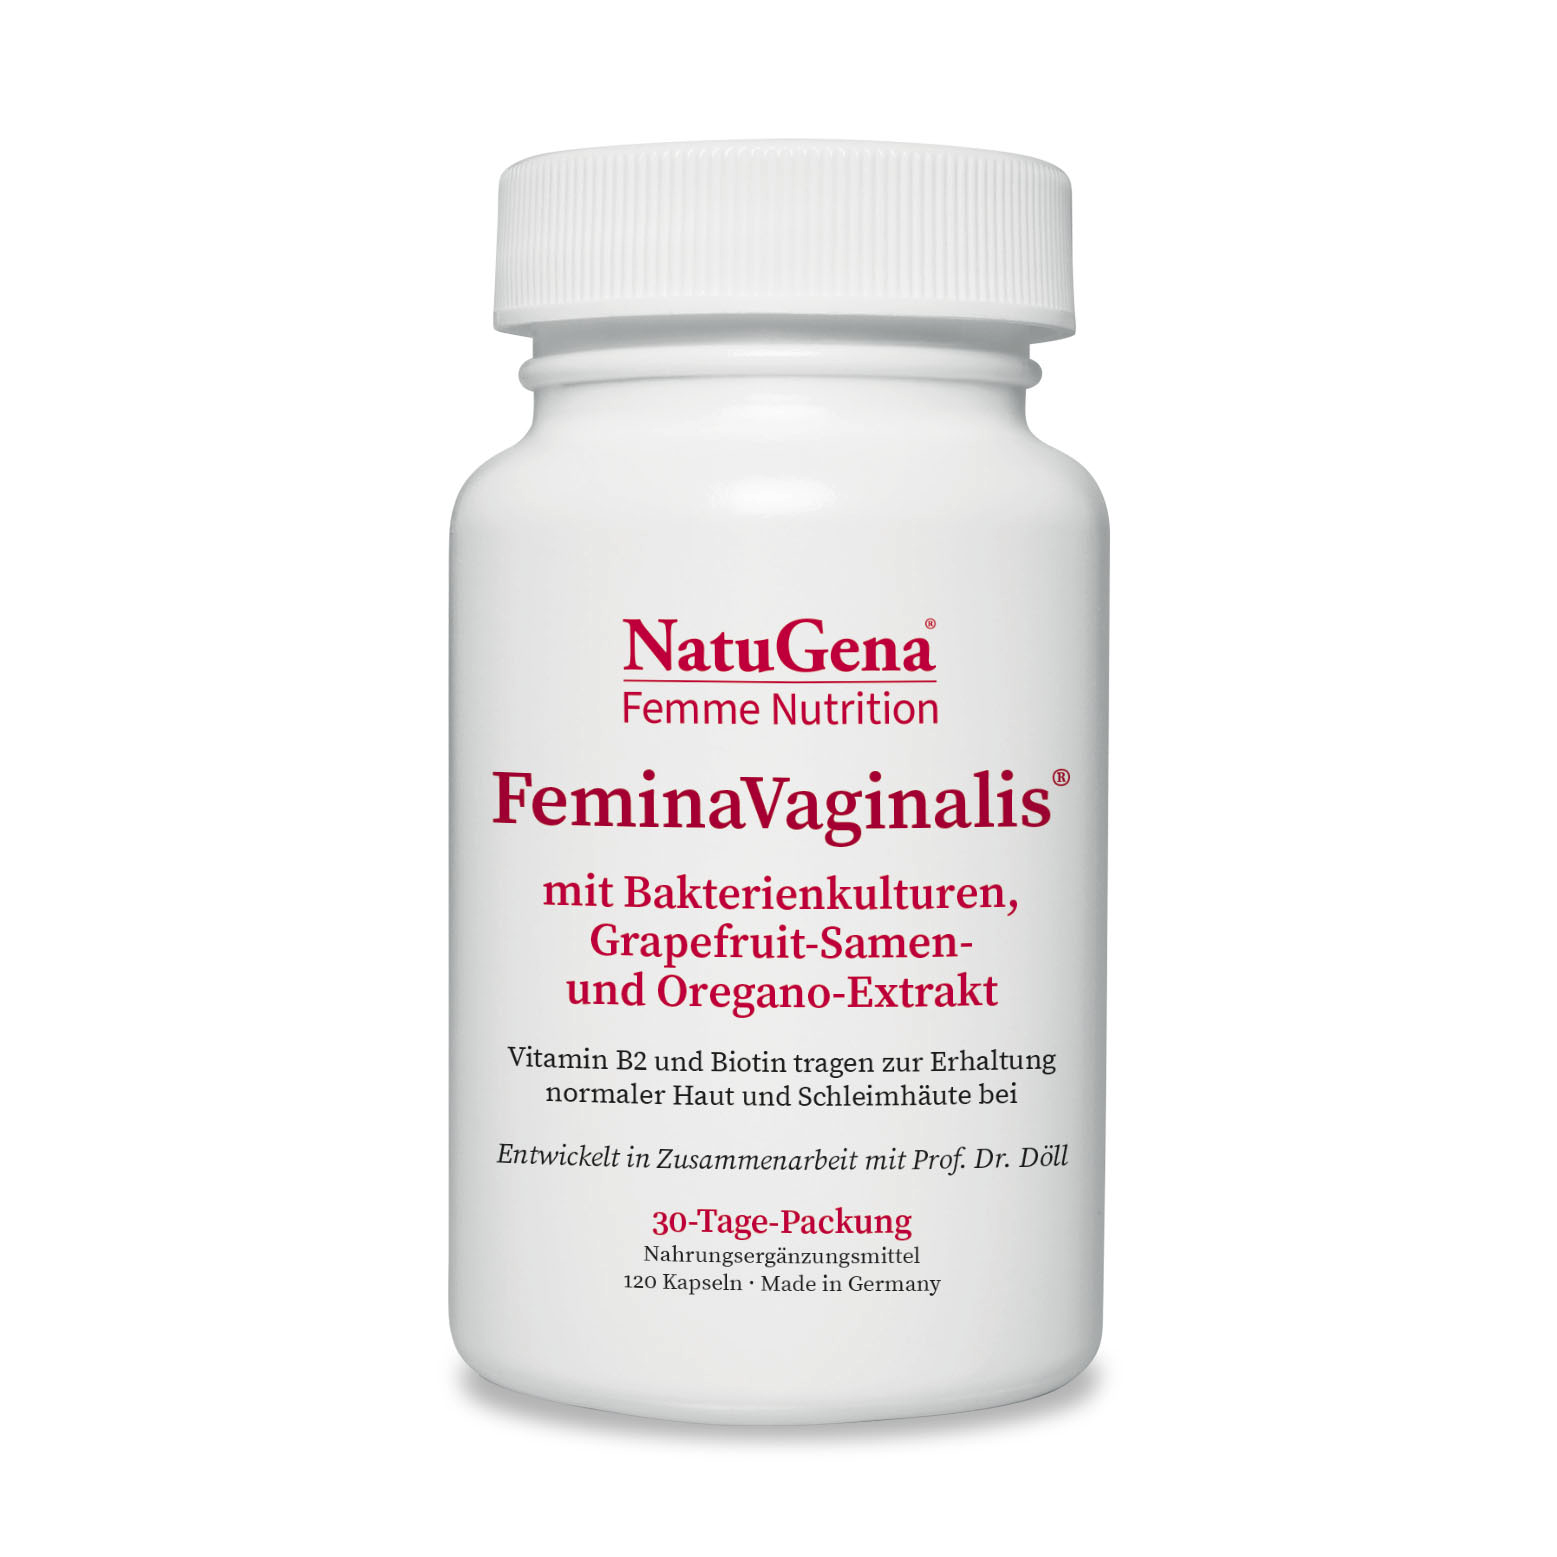 NatuGena FeminaVaginalis | 120 Kapseln | Unterstützt vaginale und Darmflora